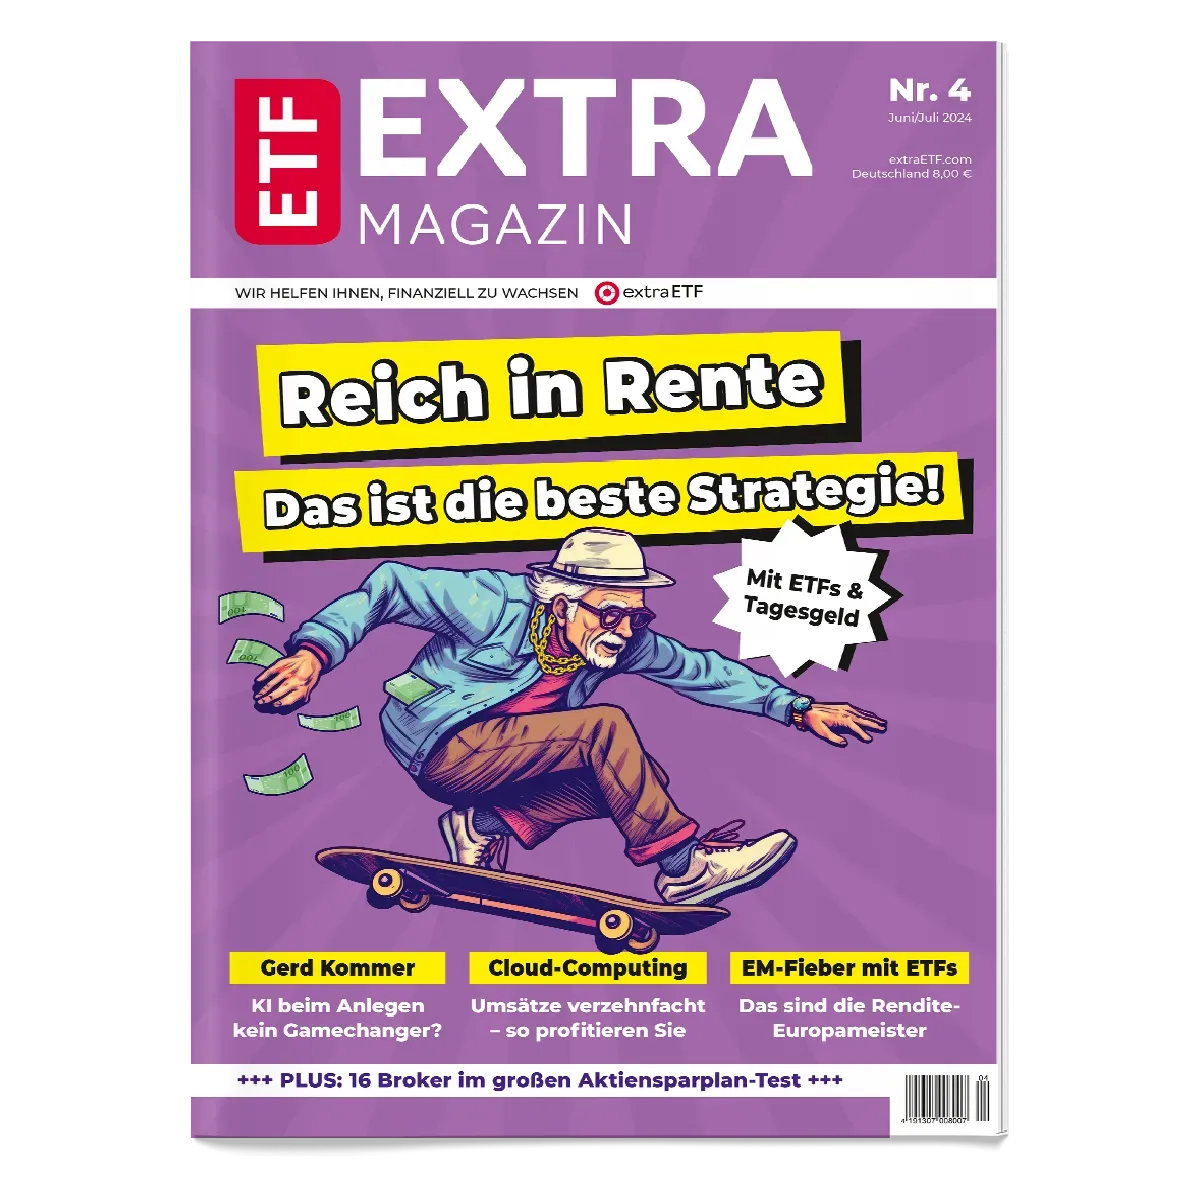 Jetzt die aktuelle Ausgabe des Extra-Magazins bestellen!